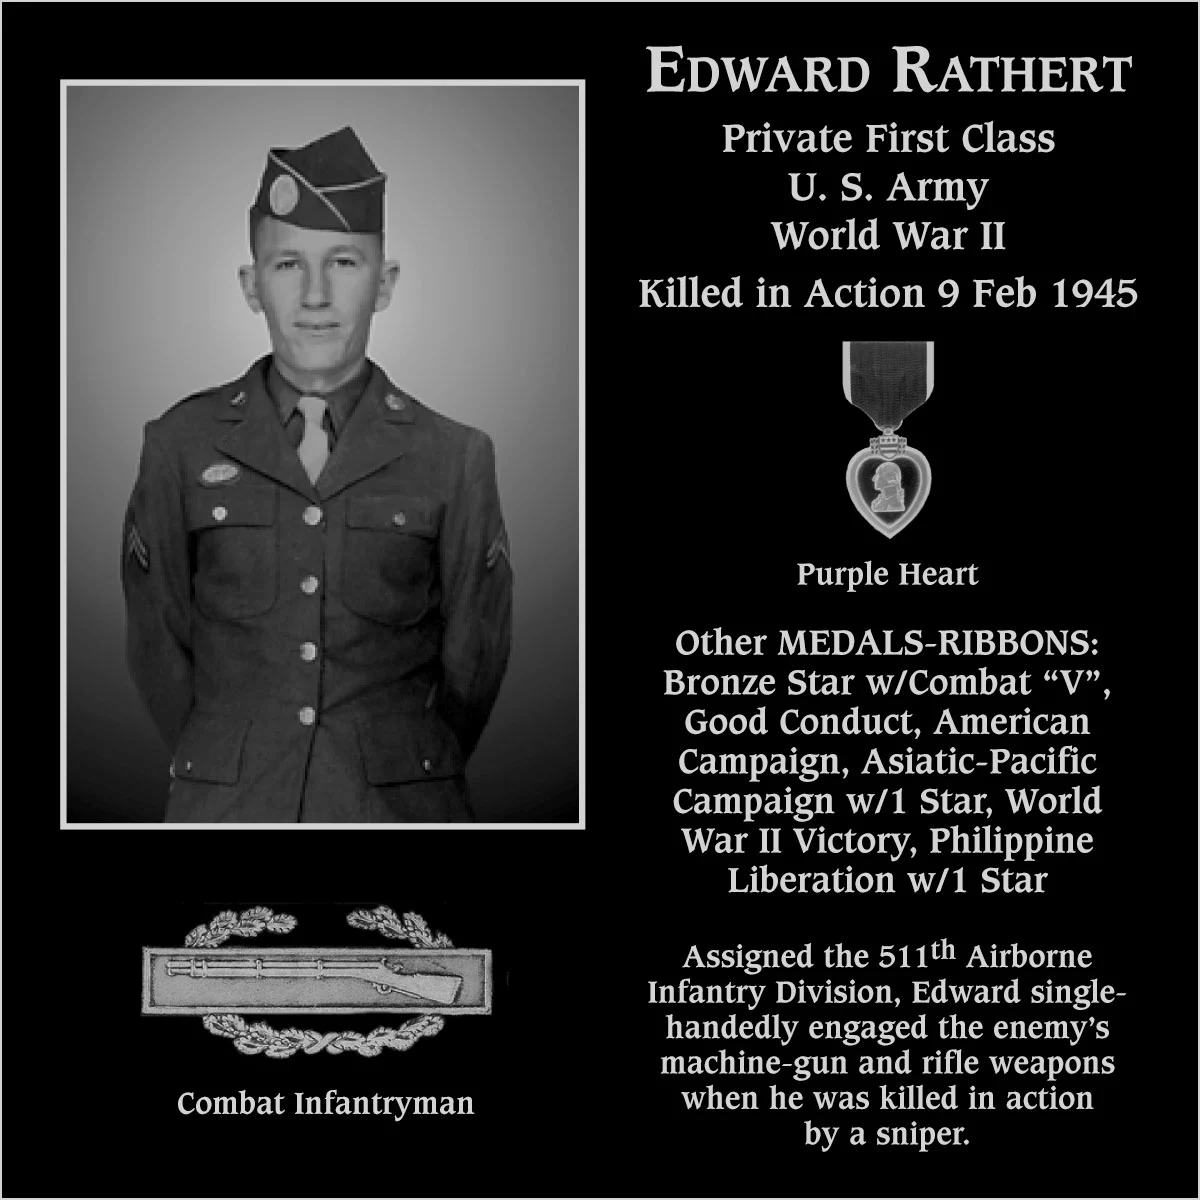 Edward Rathert